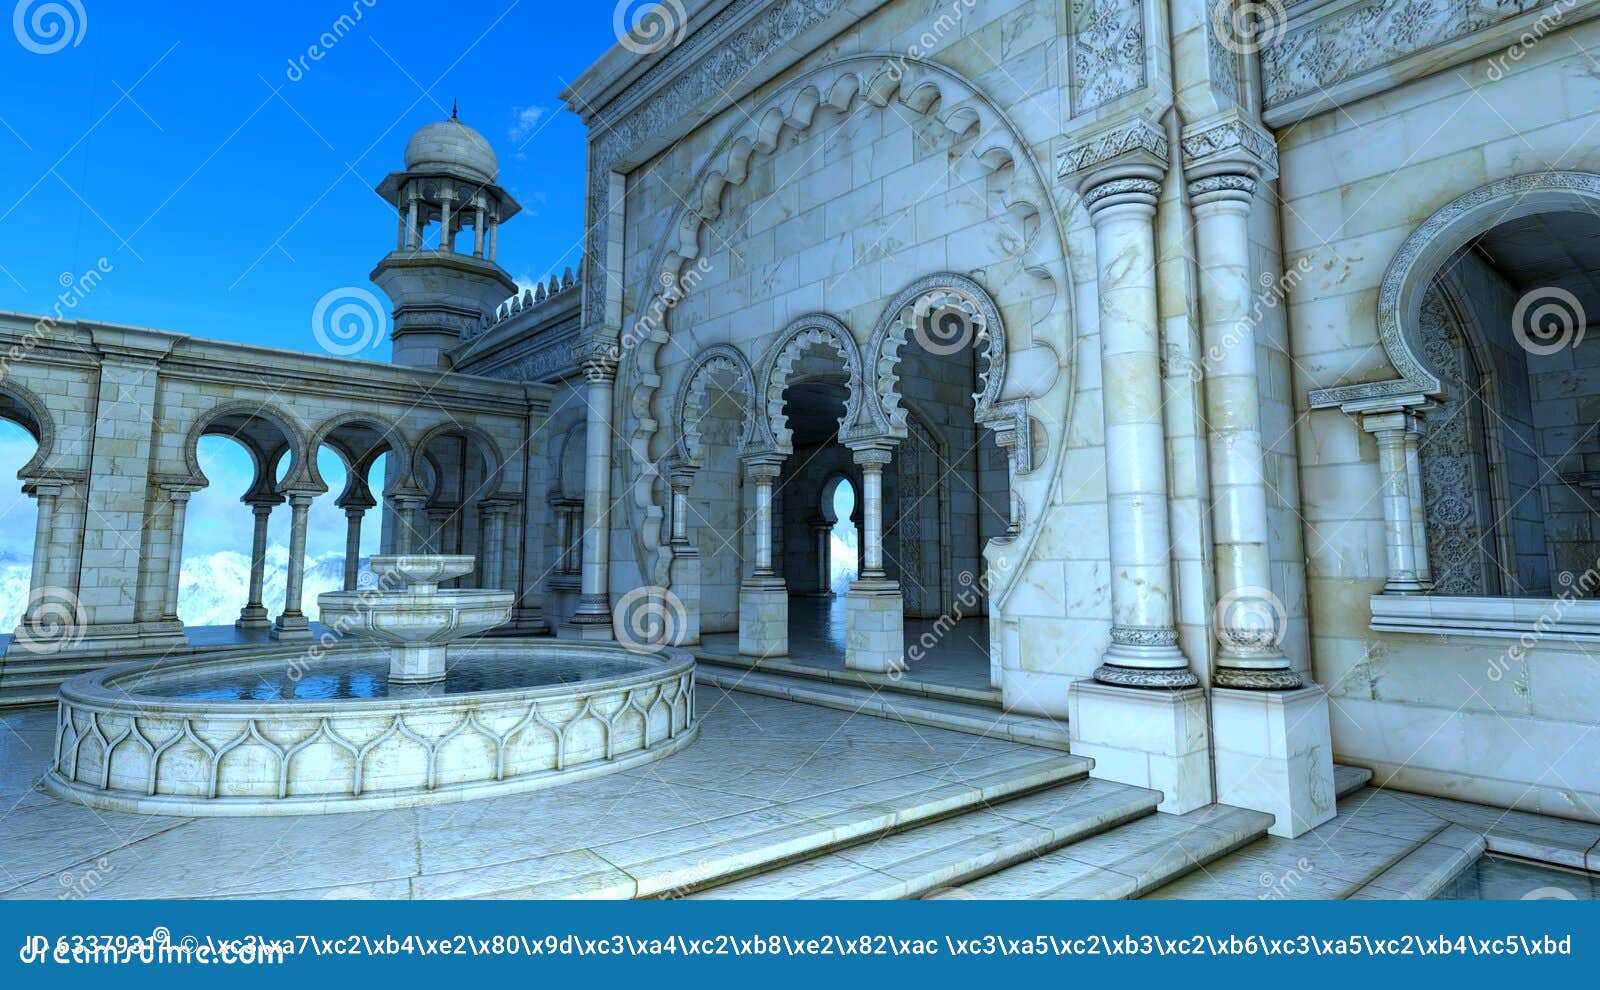 3D illustratie van een moskee